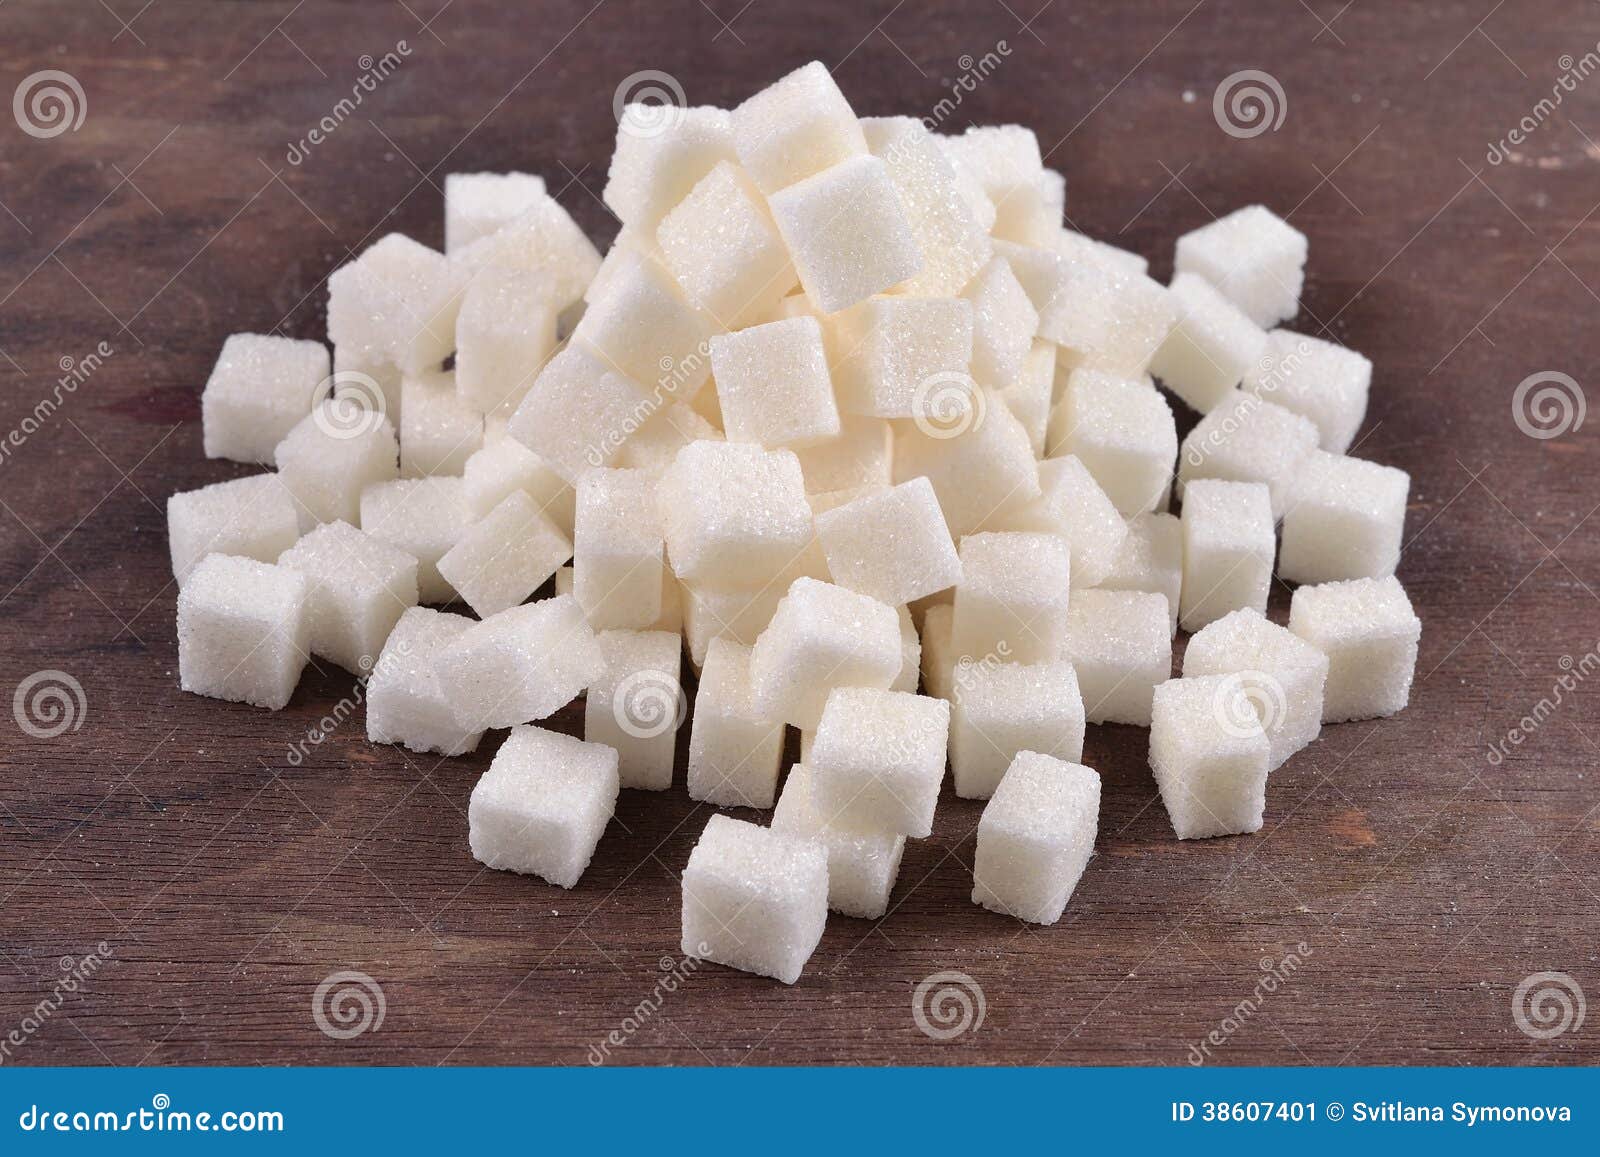 Кучи сахара. Куча сахара кусочками. Картины с изображением сахара - рафинада. Кучка сахара фото. Сахар в куче фото.